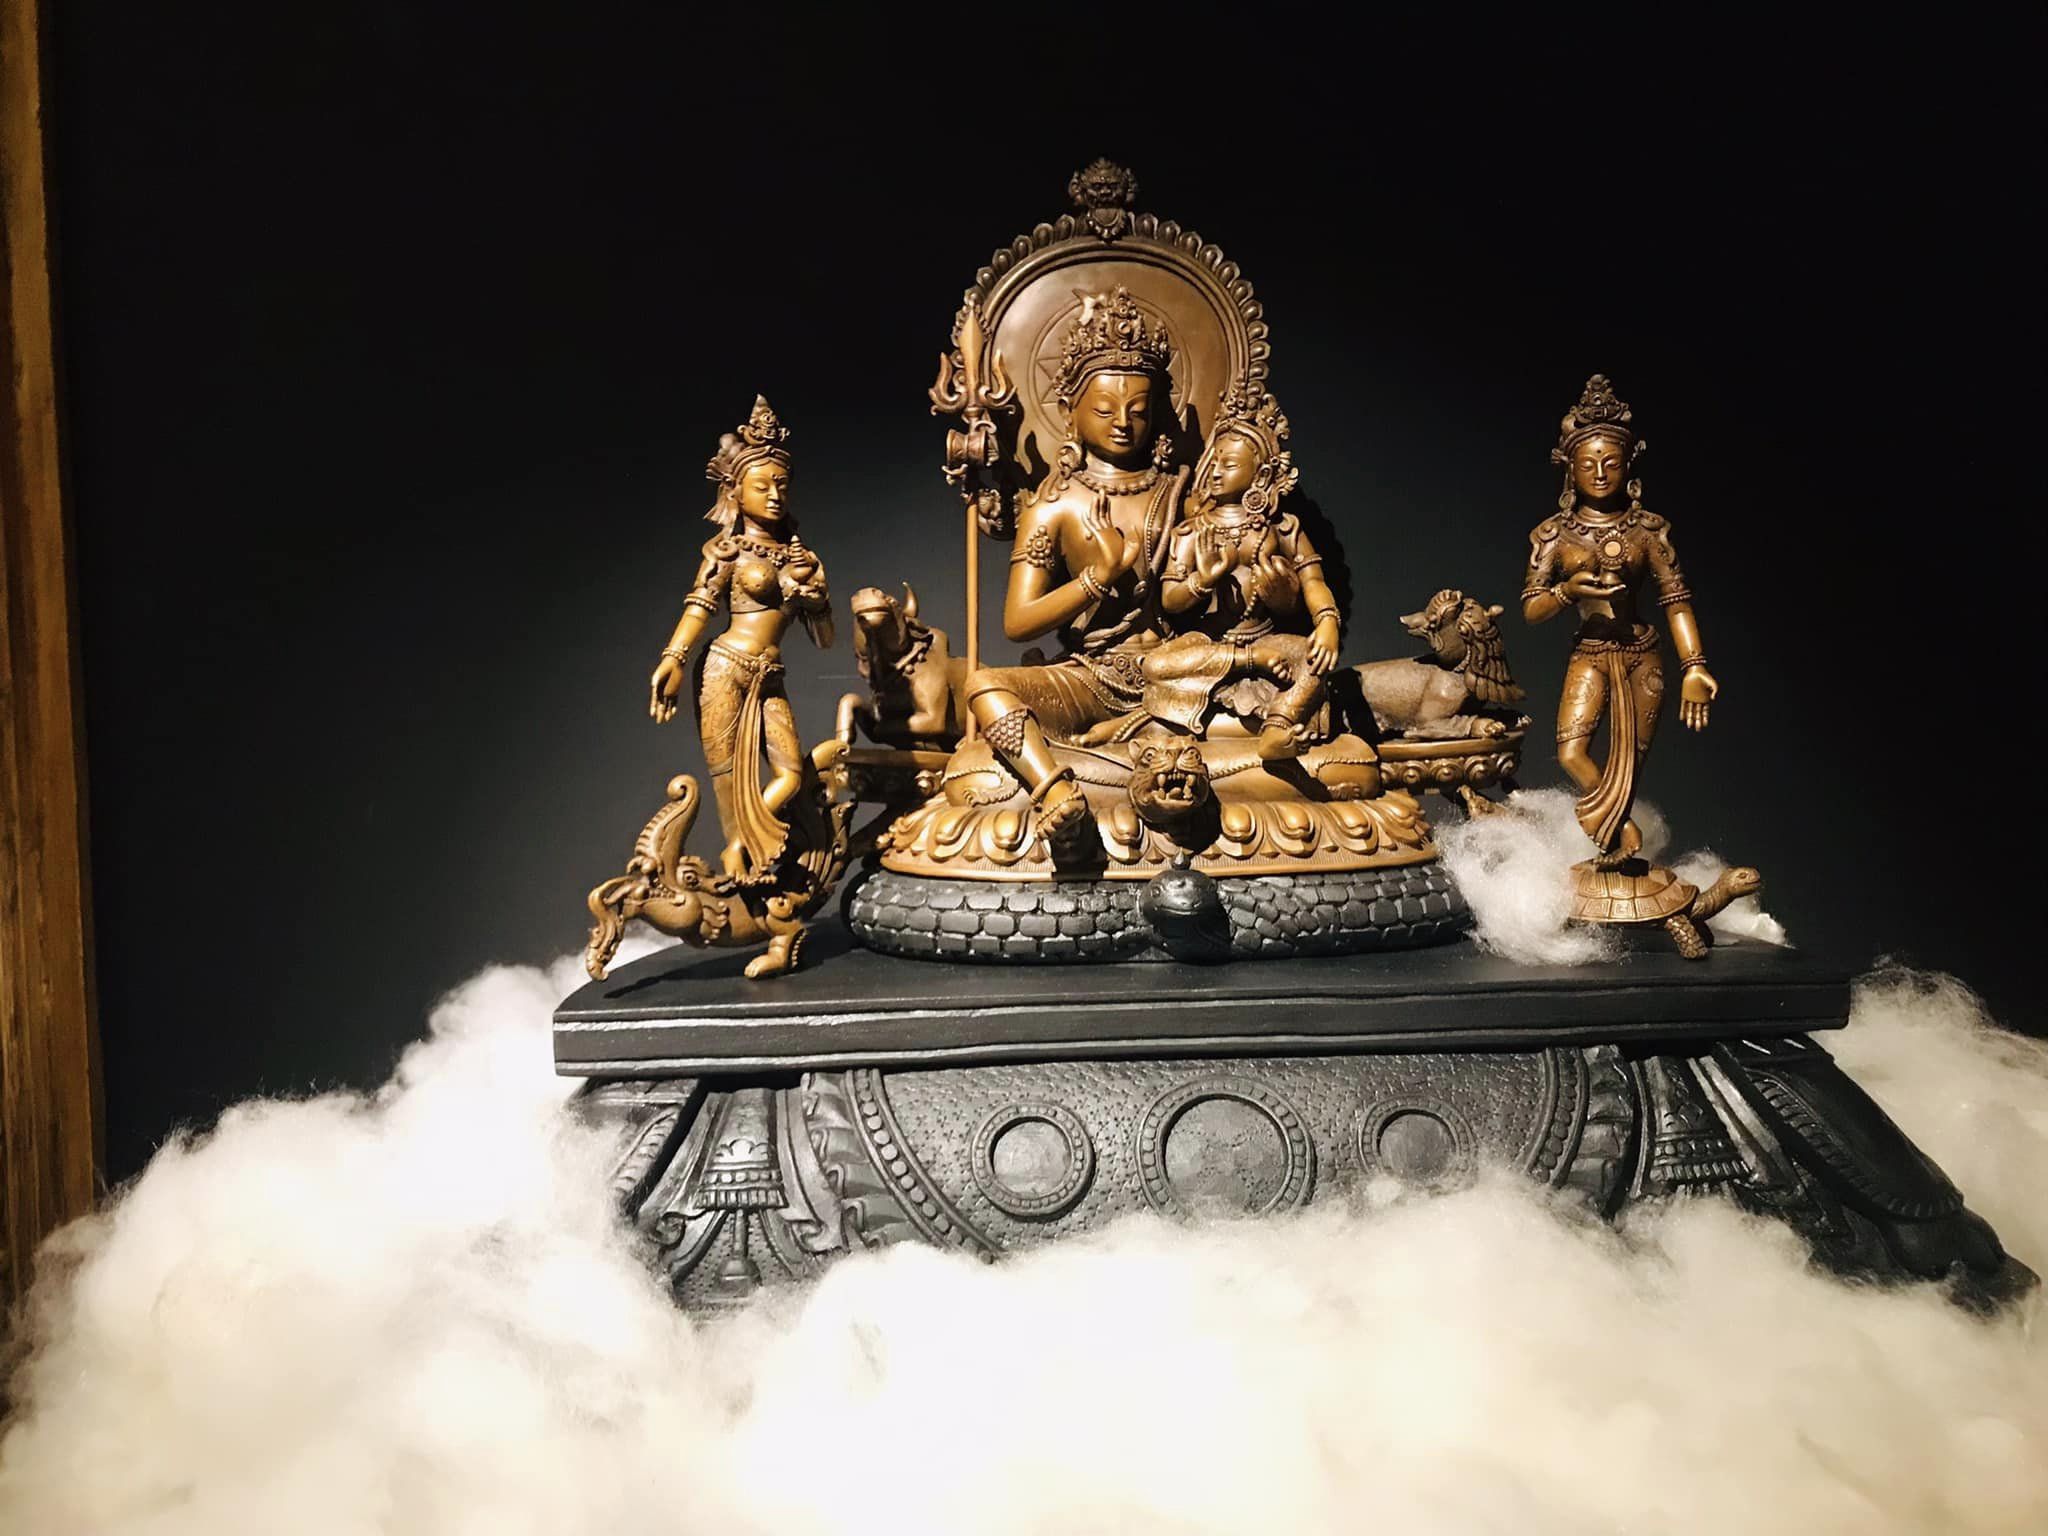 Metal statute titled Uma Maheshvar by artist Anil Shakya at Kathmandu Art Biennale, MONA, Thamel, Kathmandu. Photo: Krishna Gopal Shrestha